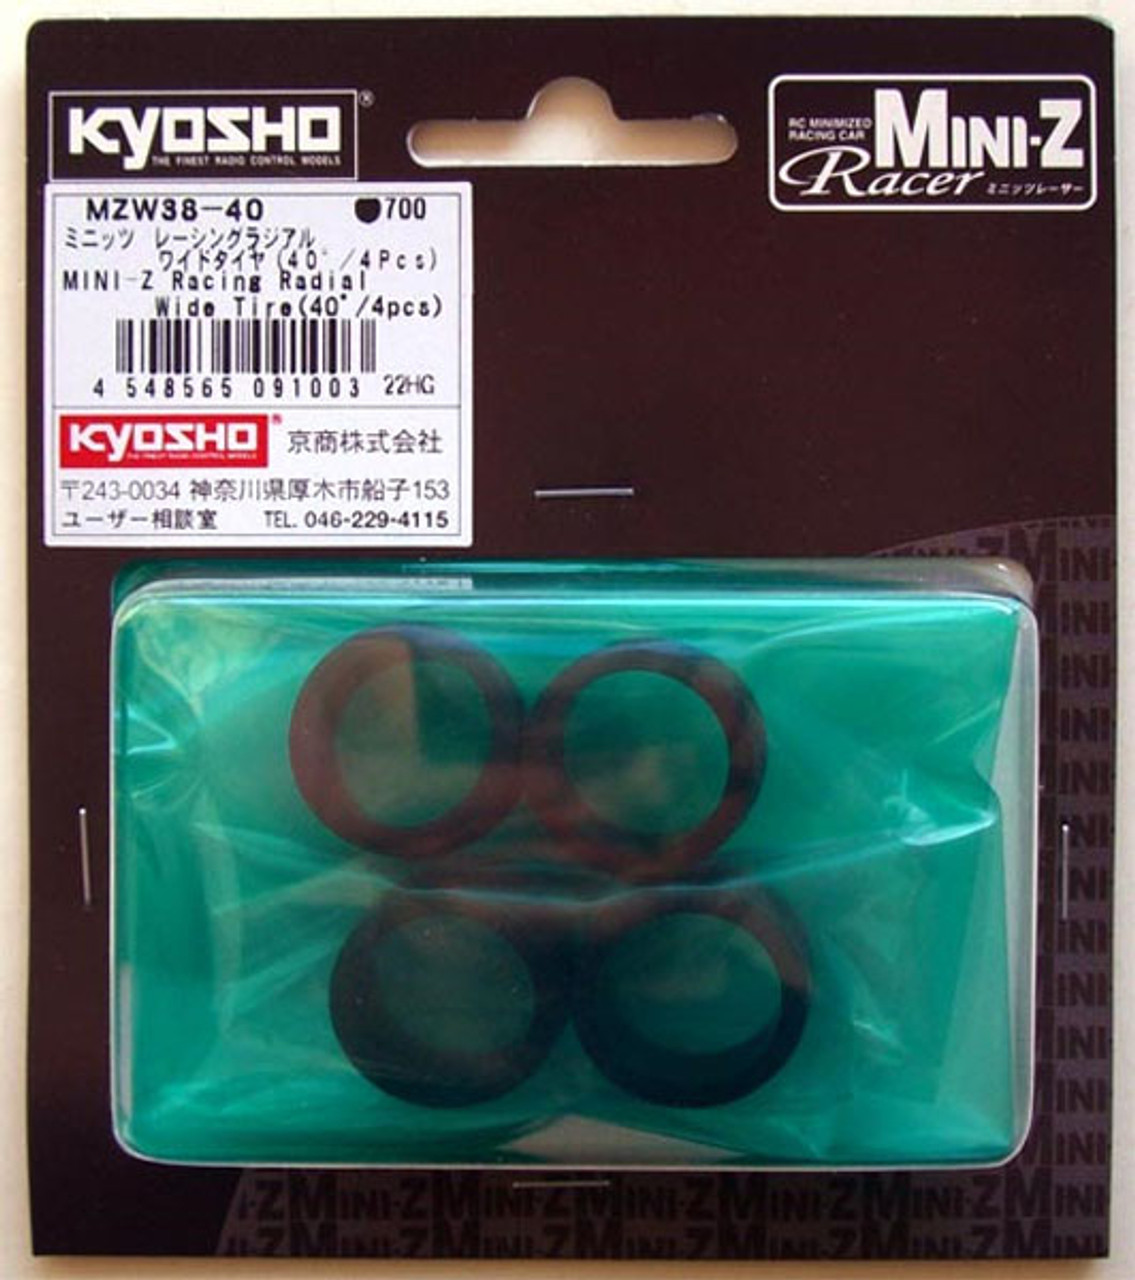 Kyosho MINI-Z Racing Radial Wide Tire 40 MZW38-40 